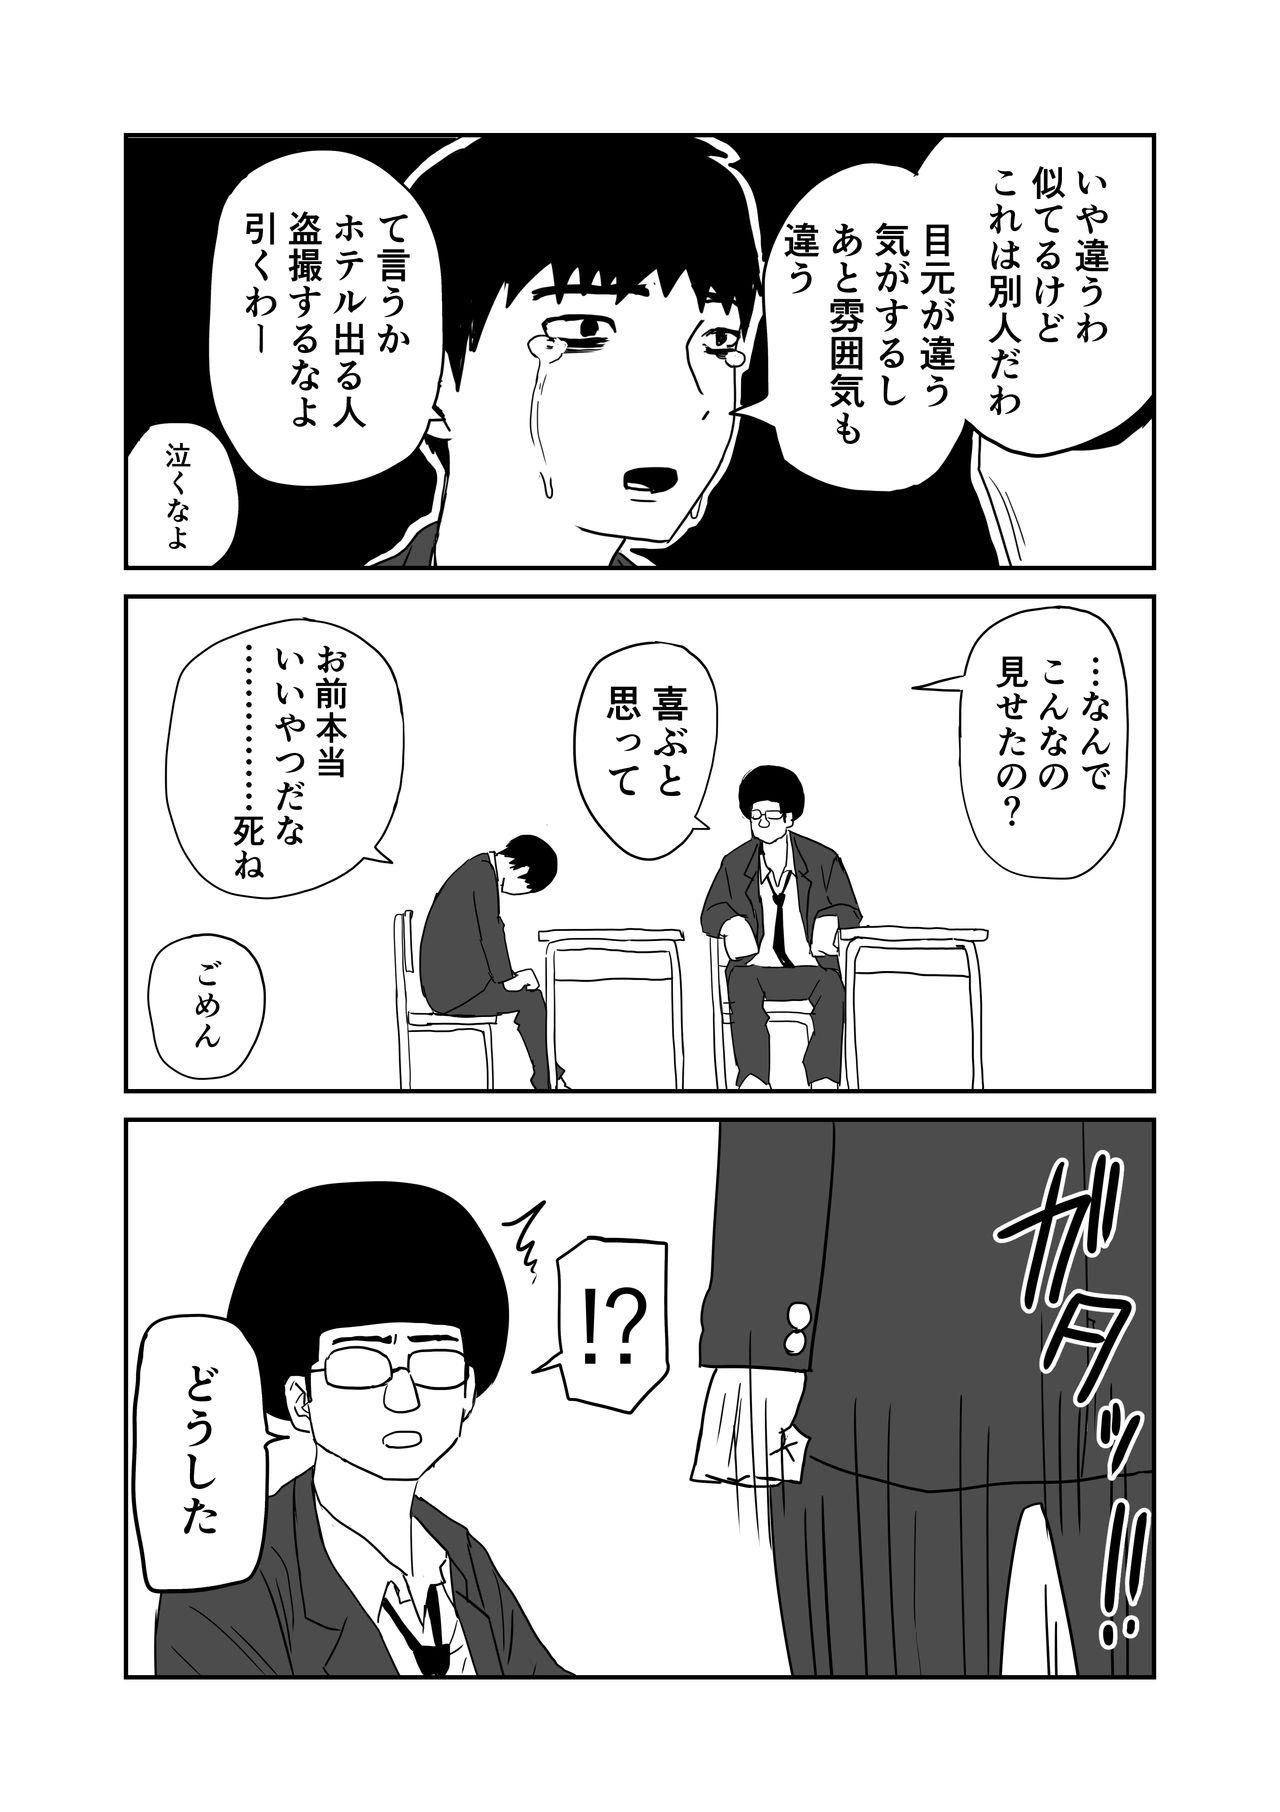 女子高生のエロ漫画 9